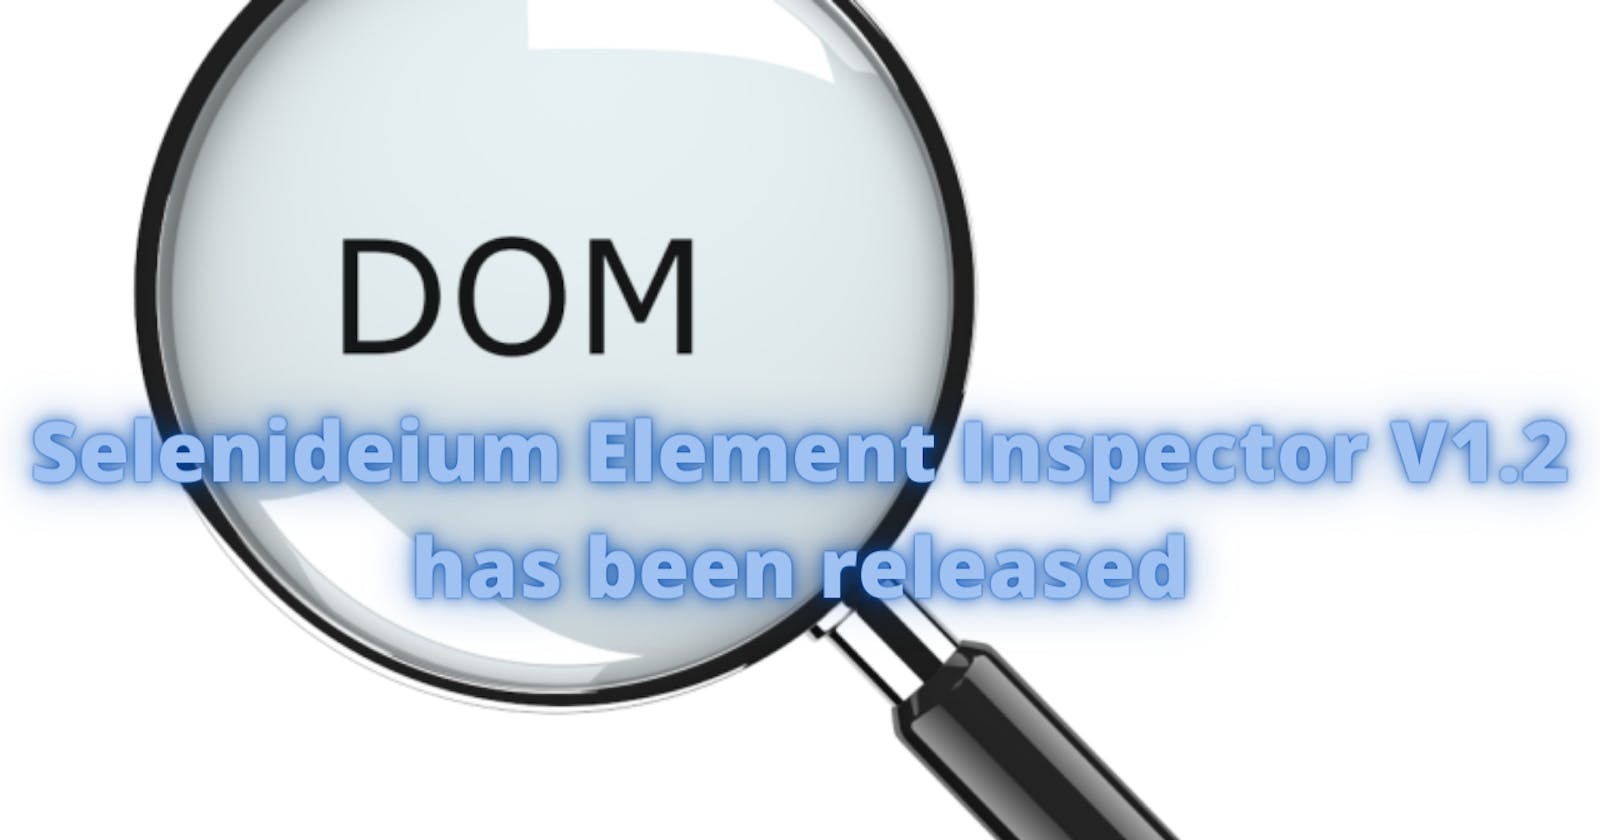 Selenideium Element Inspector v1.2 has been released